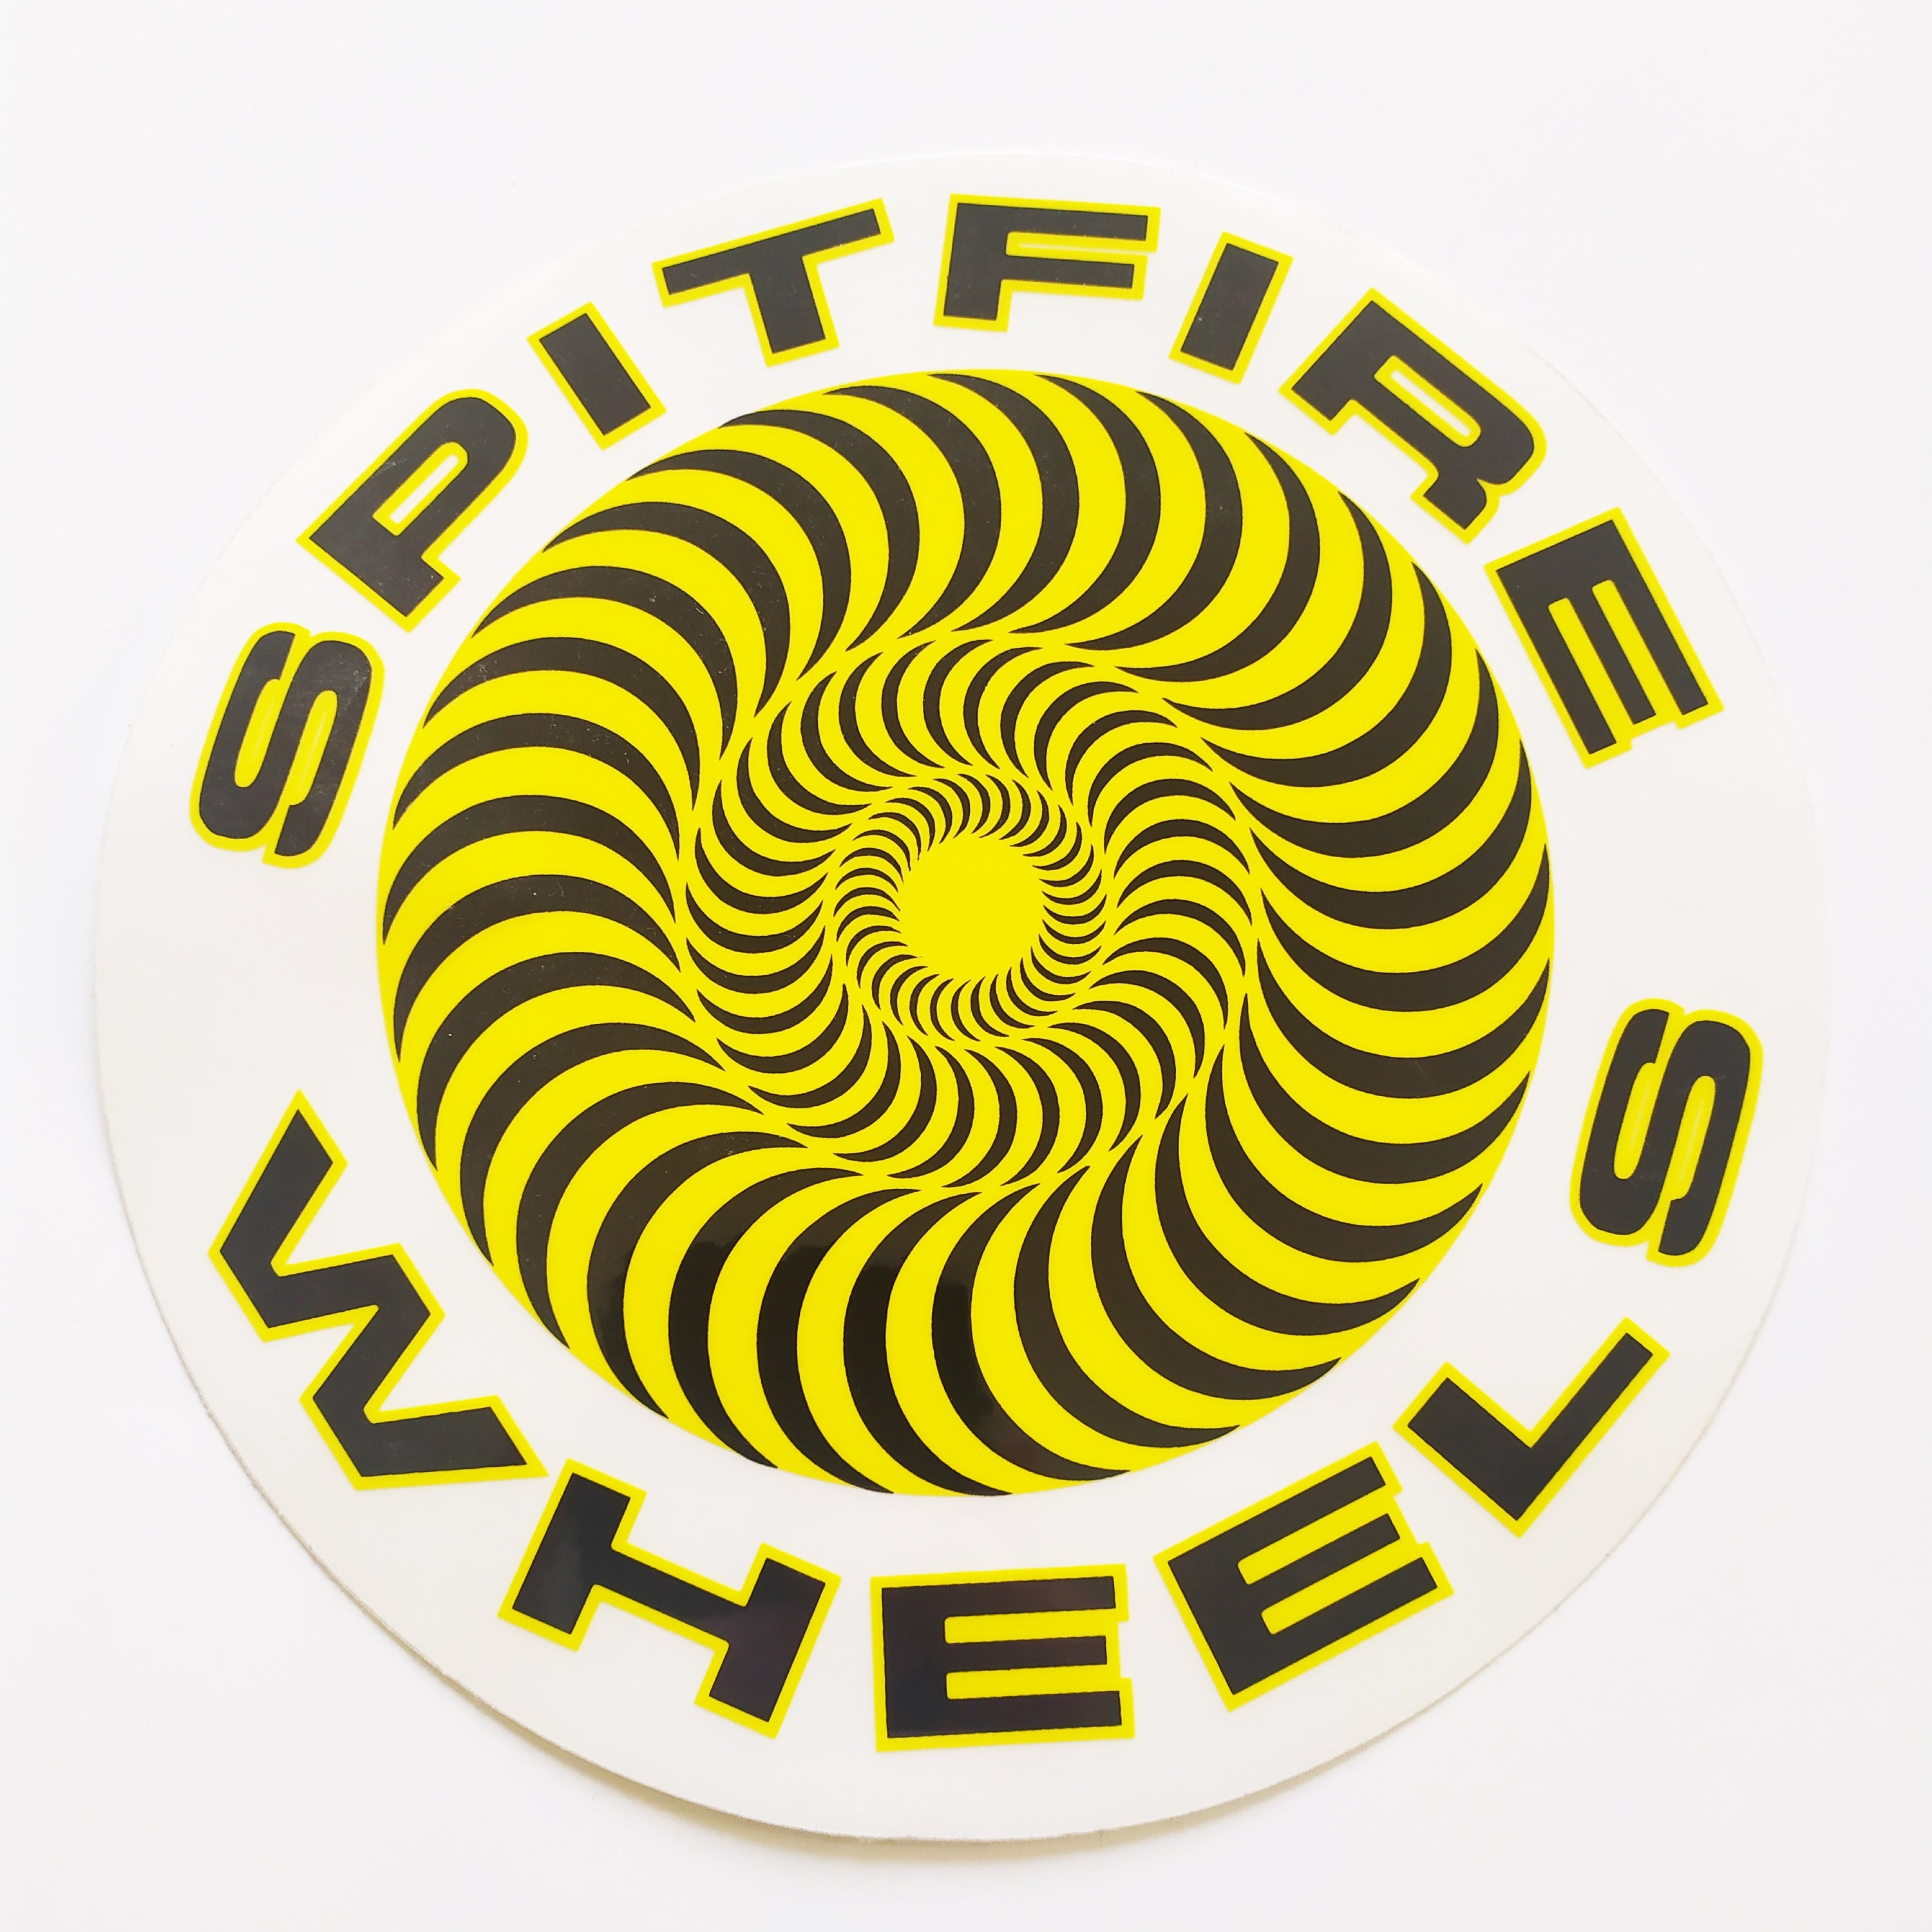 Spitfire Wheels Swirl Yellow Skateboard Sticker - 19cm across approx - SkateboardStickers.com